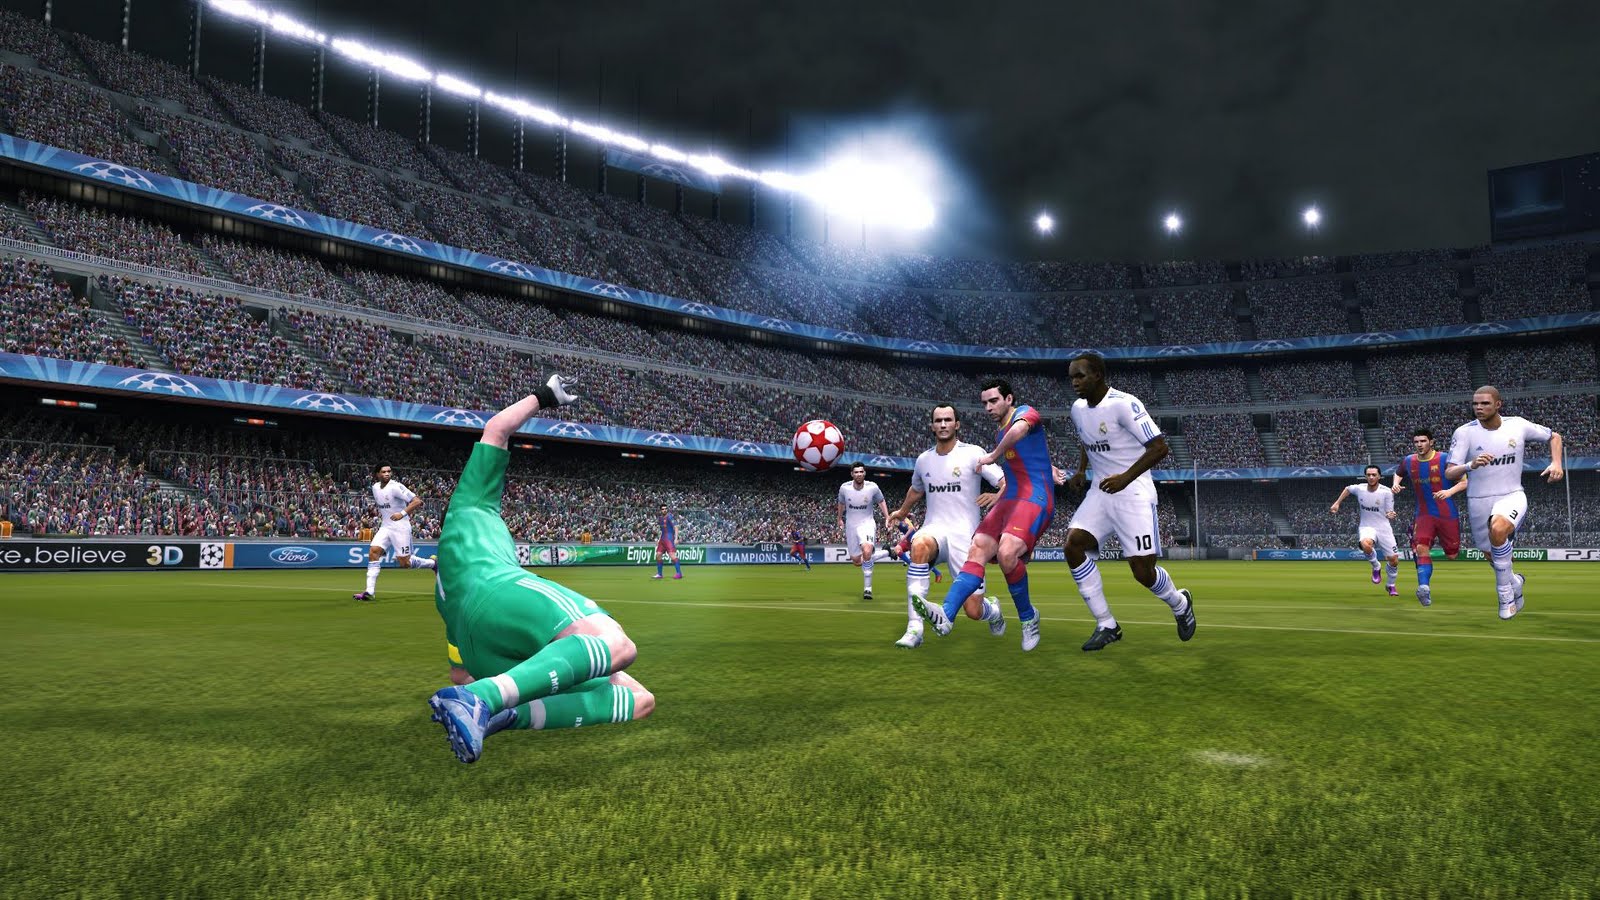 Free PES 2011 update detailed - Pro Evolution Soccer 2011 - Gamereactor